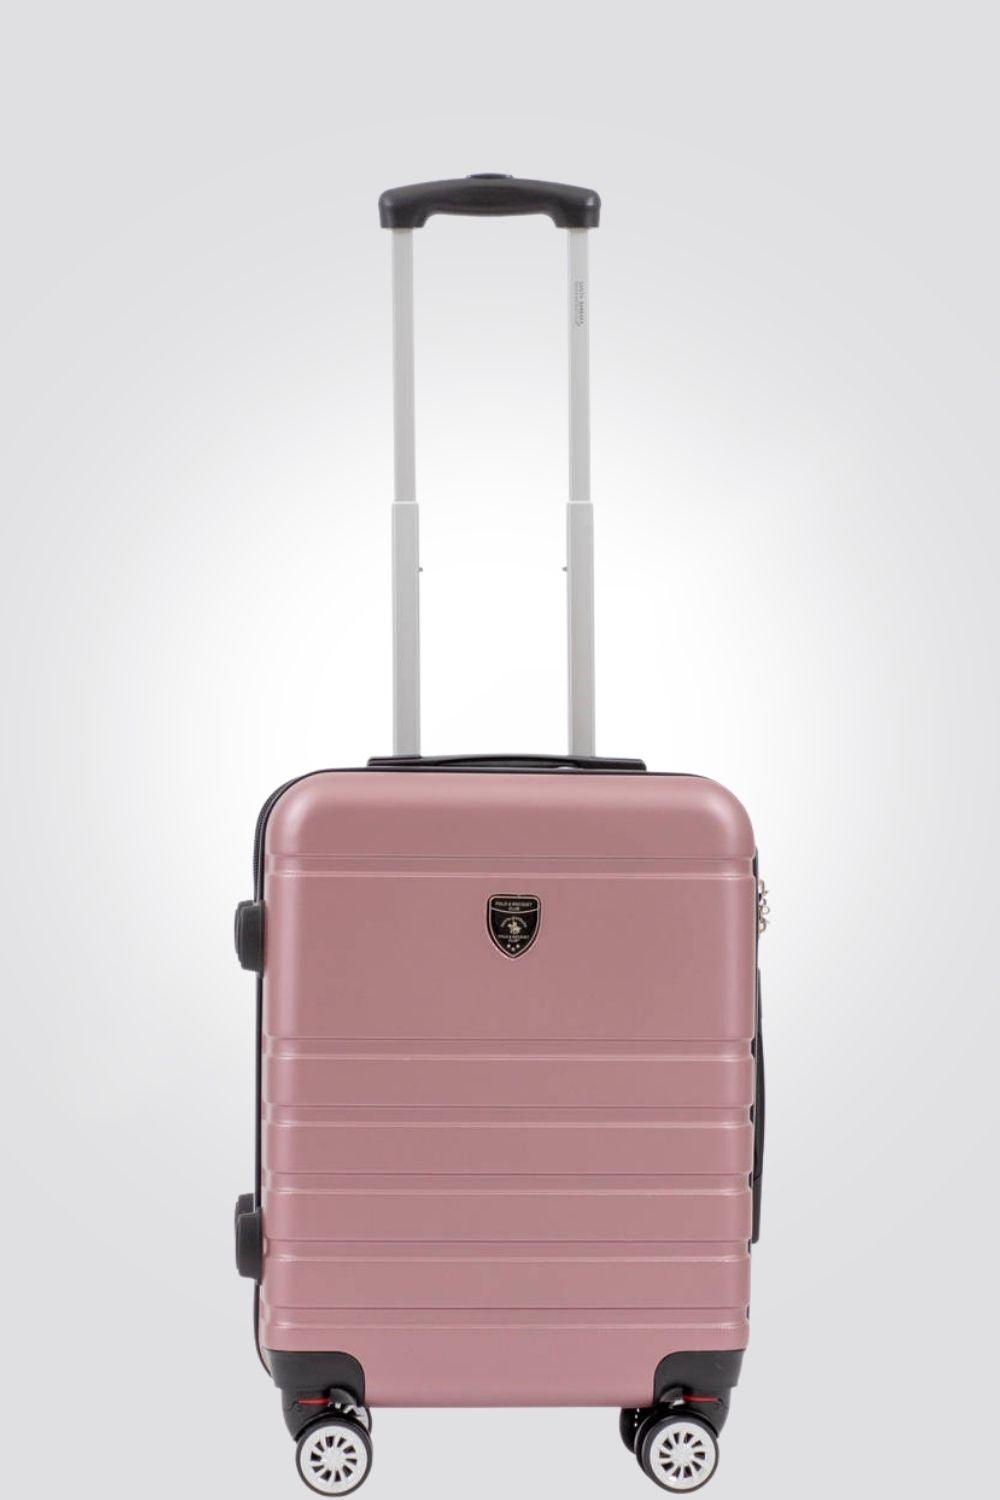 מזוודה טרולי עלייה למטוס 20" דגם 1807 בצבע רוז - MASHBIR//365